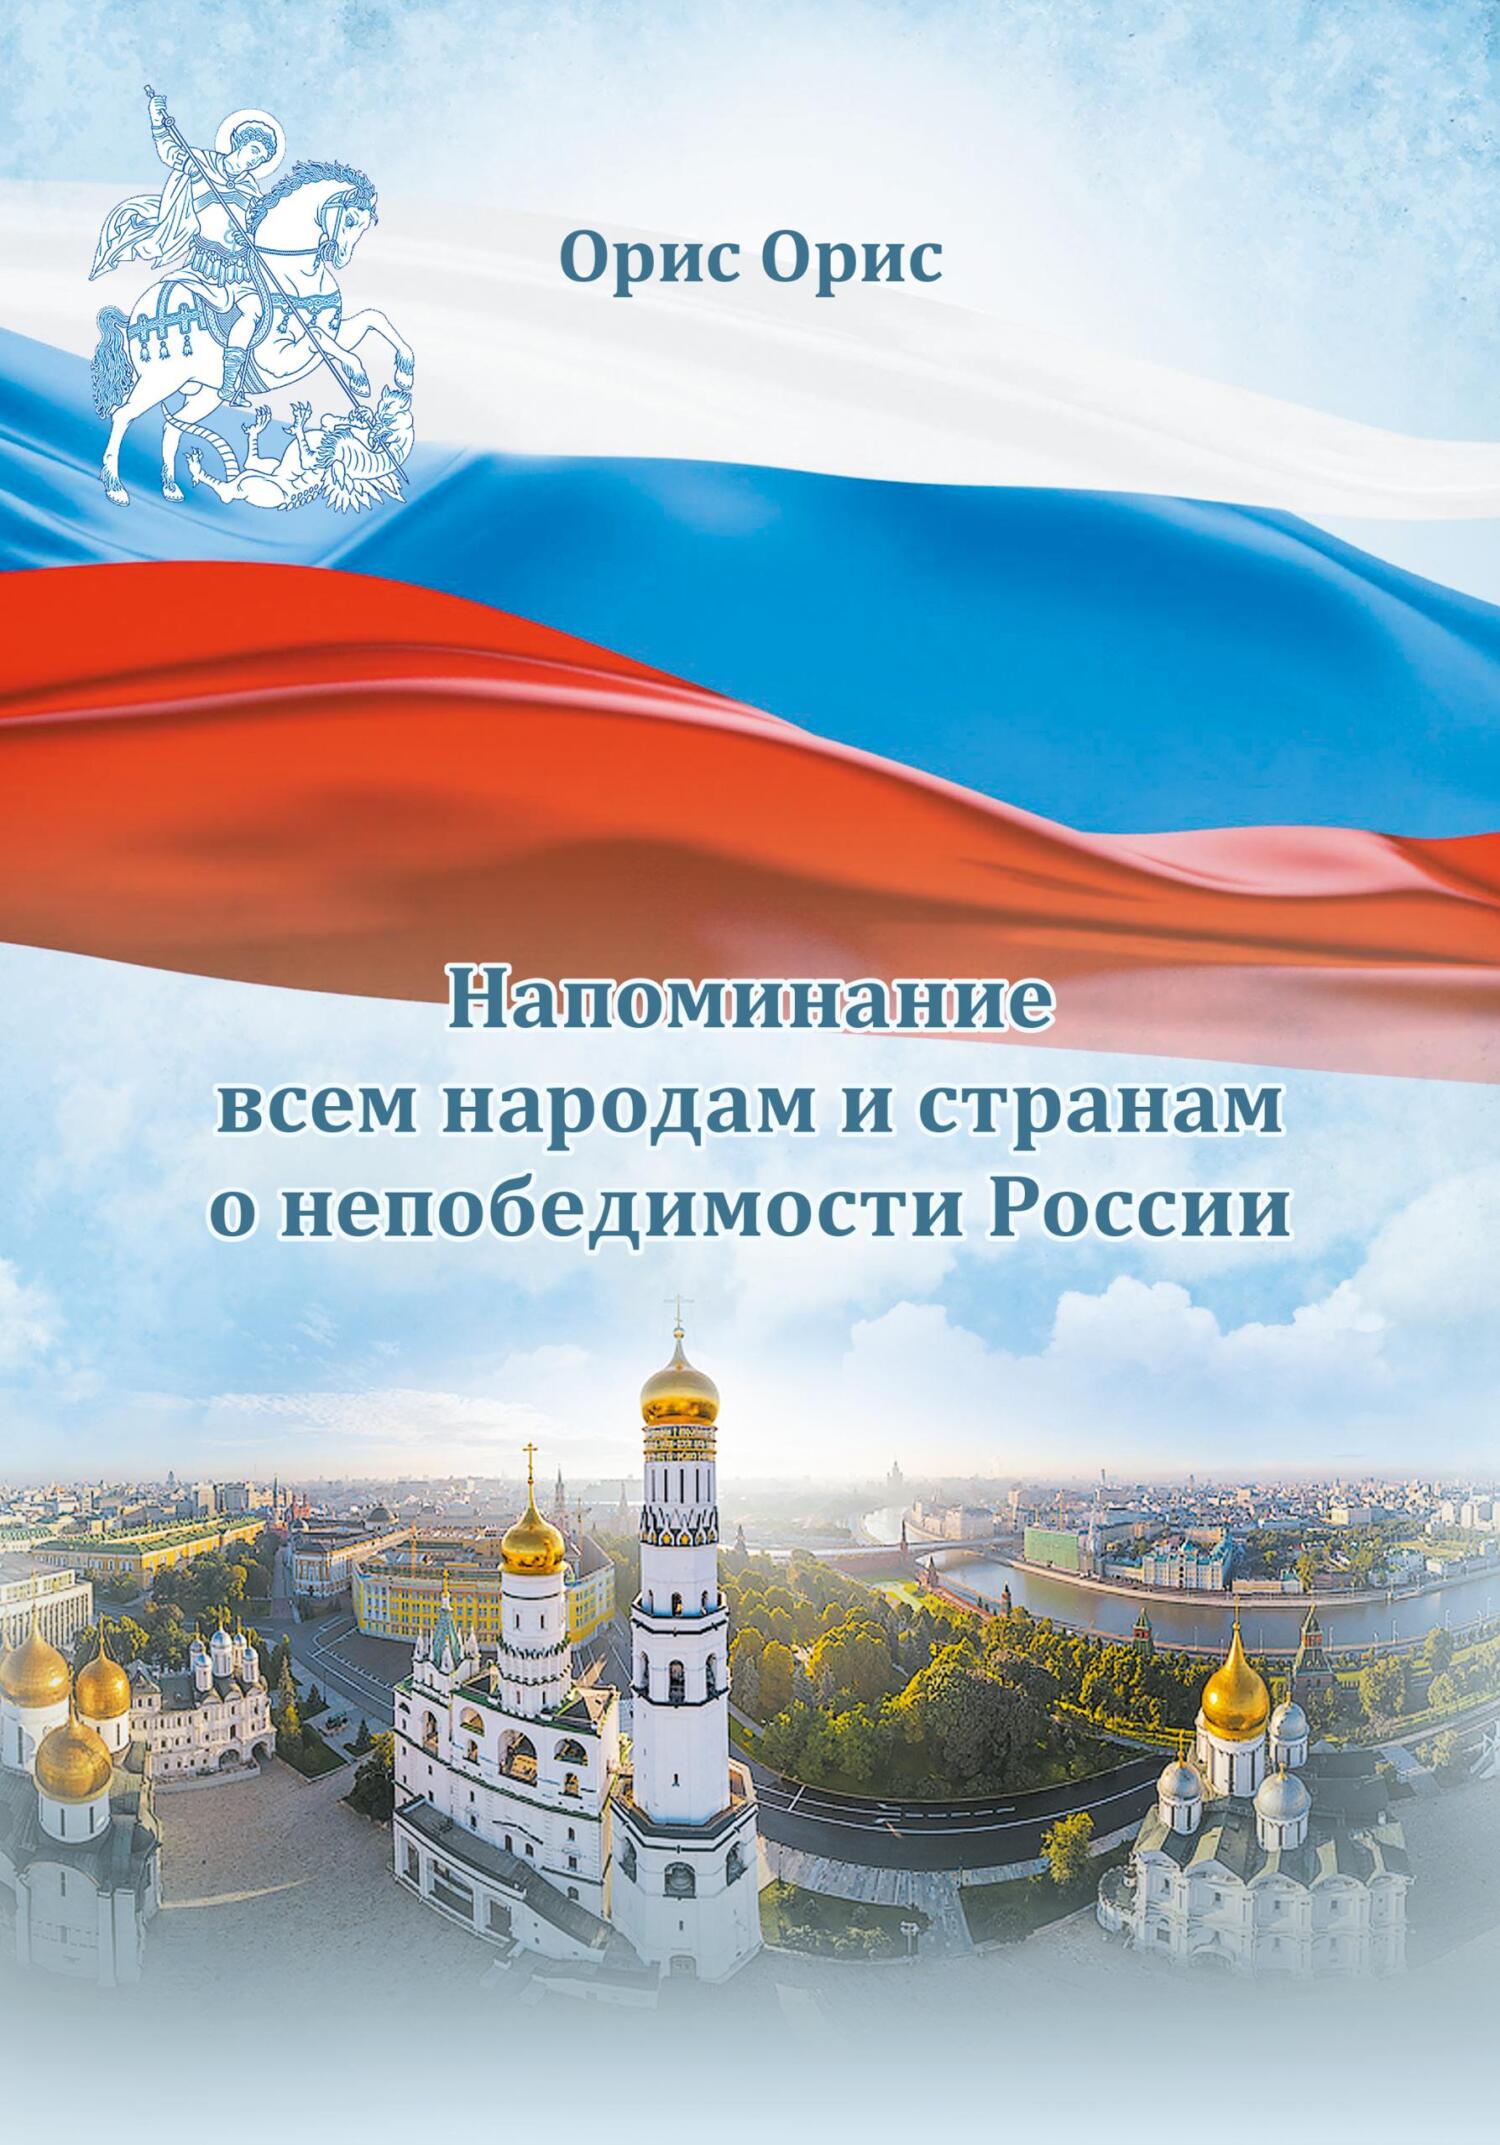 Напоминание всем народам и странам о непобедимости России - Орис Орис